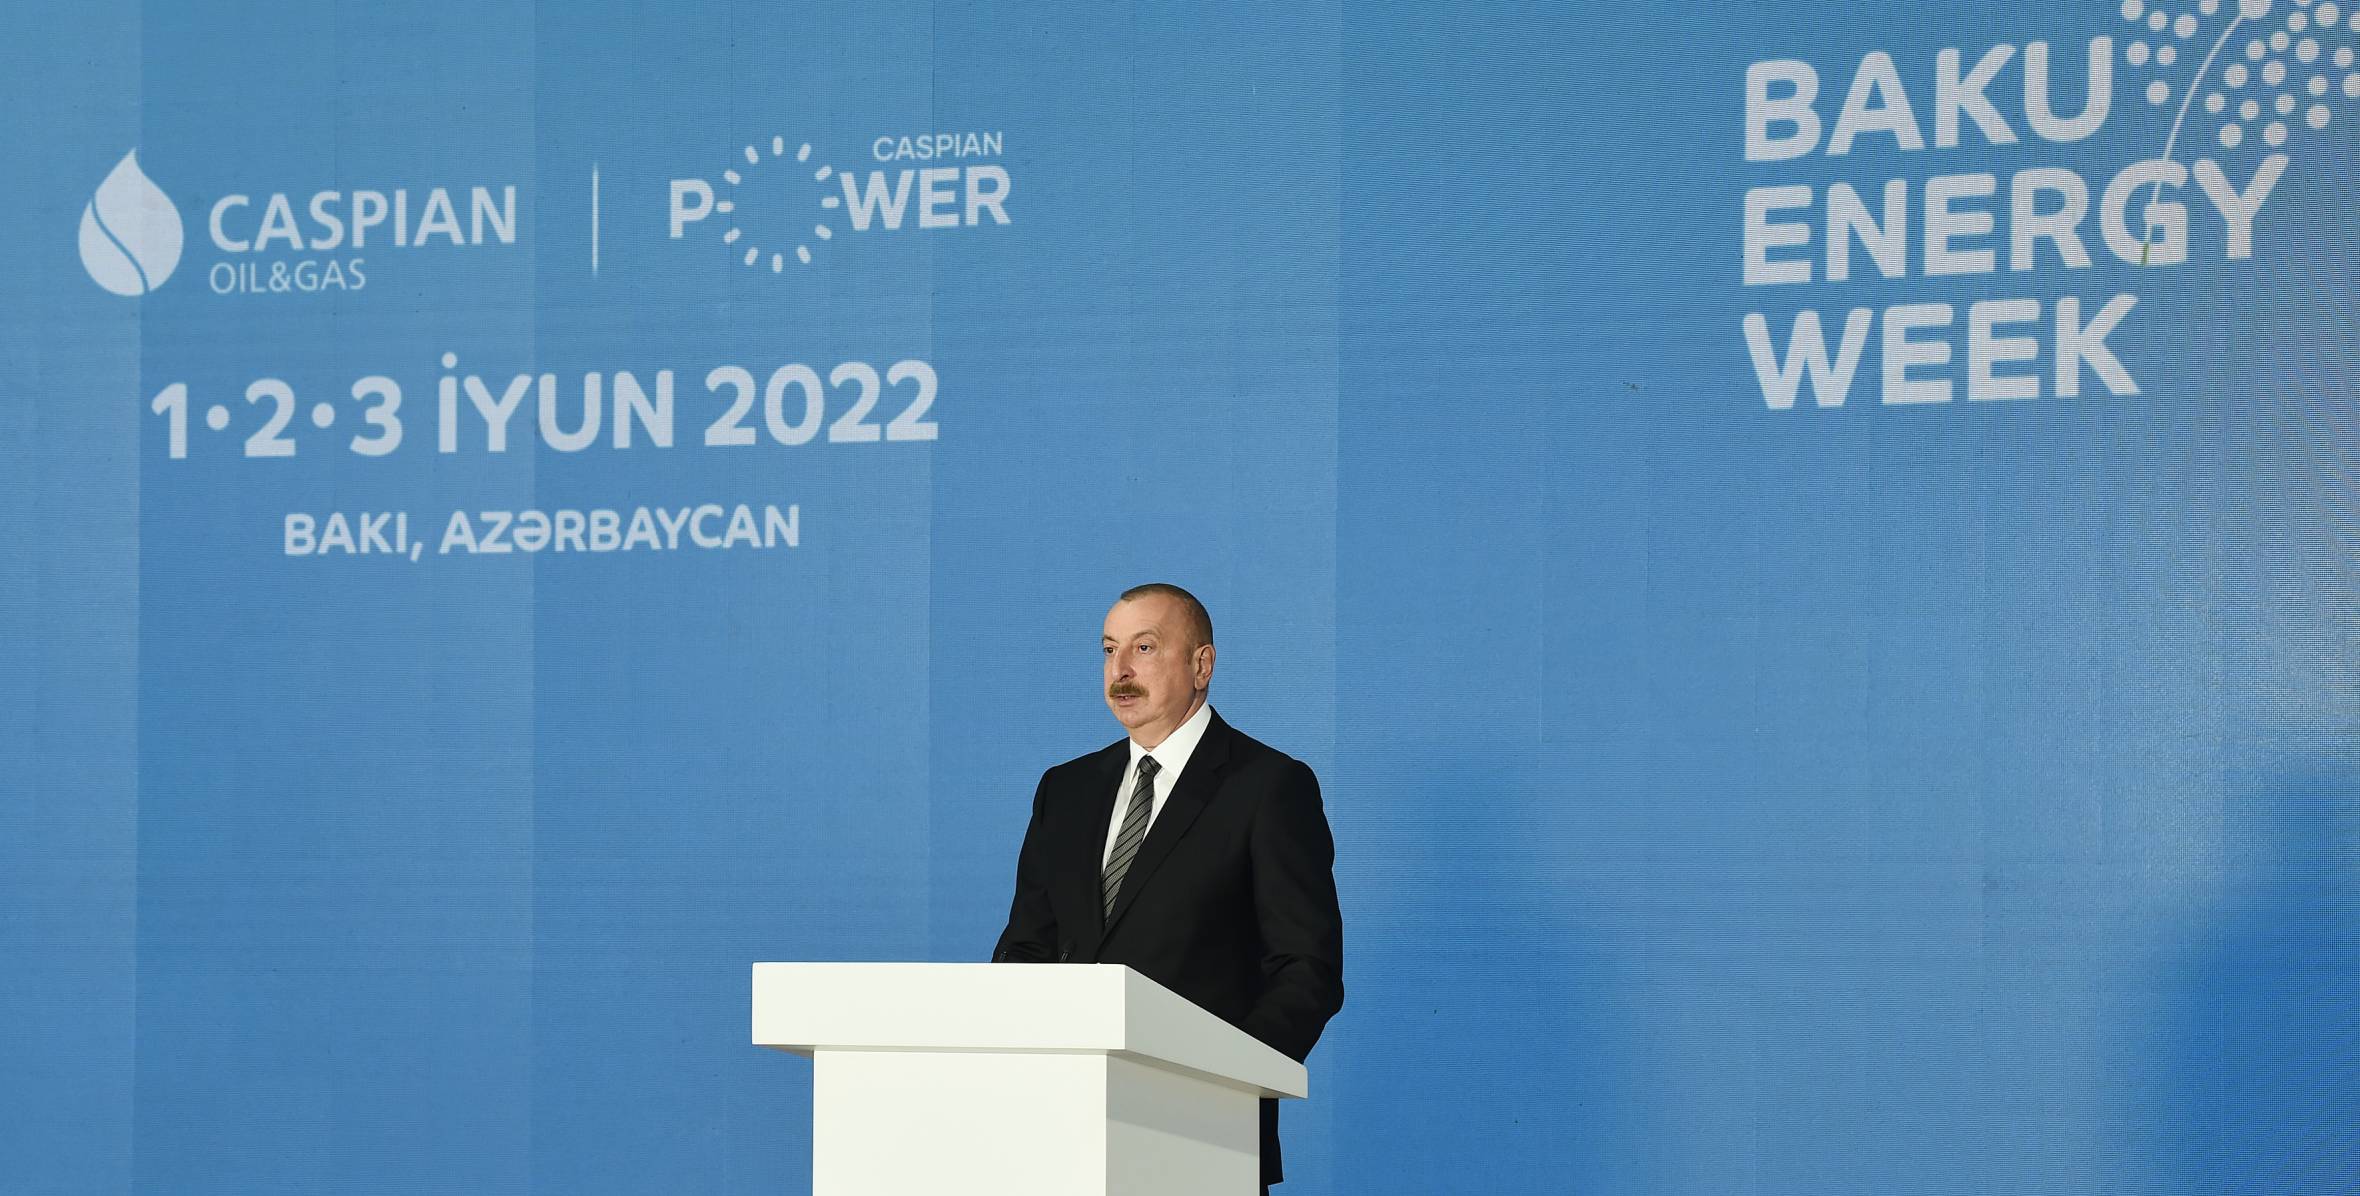 Ильхам Алиев принял участие в церемонии официального открытия 27-й Международной выставки нефти и газа Каспия в рамках Бакинской энергетической недели